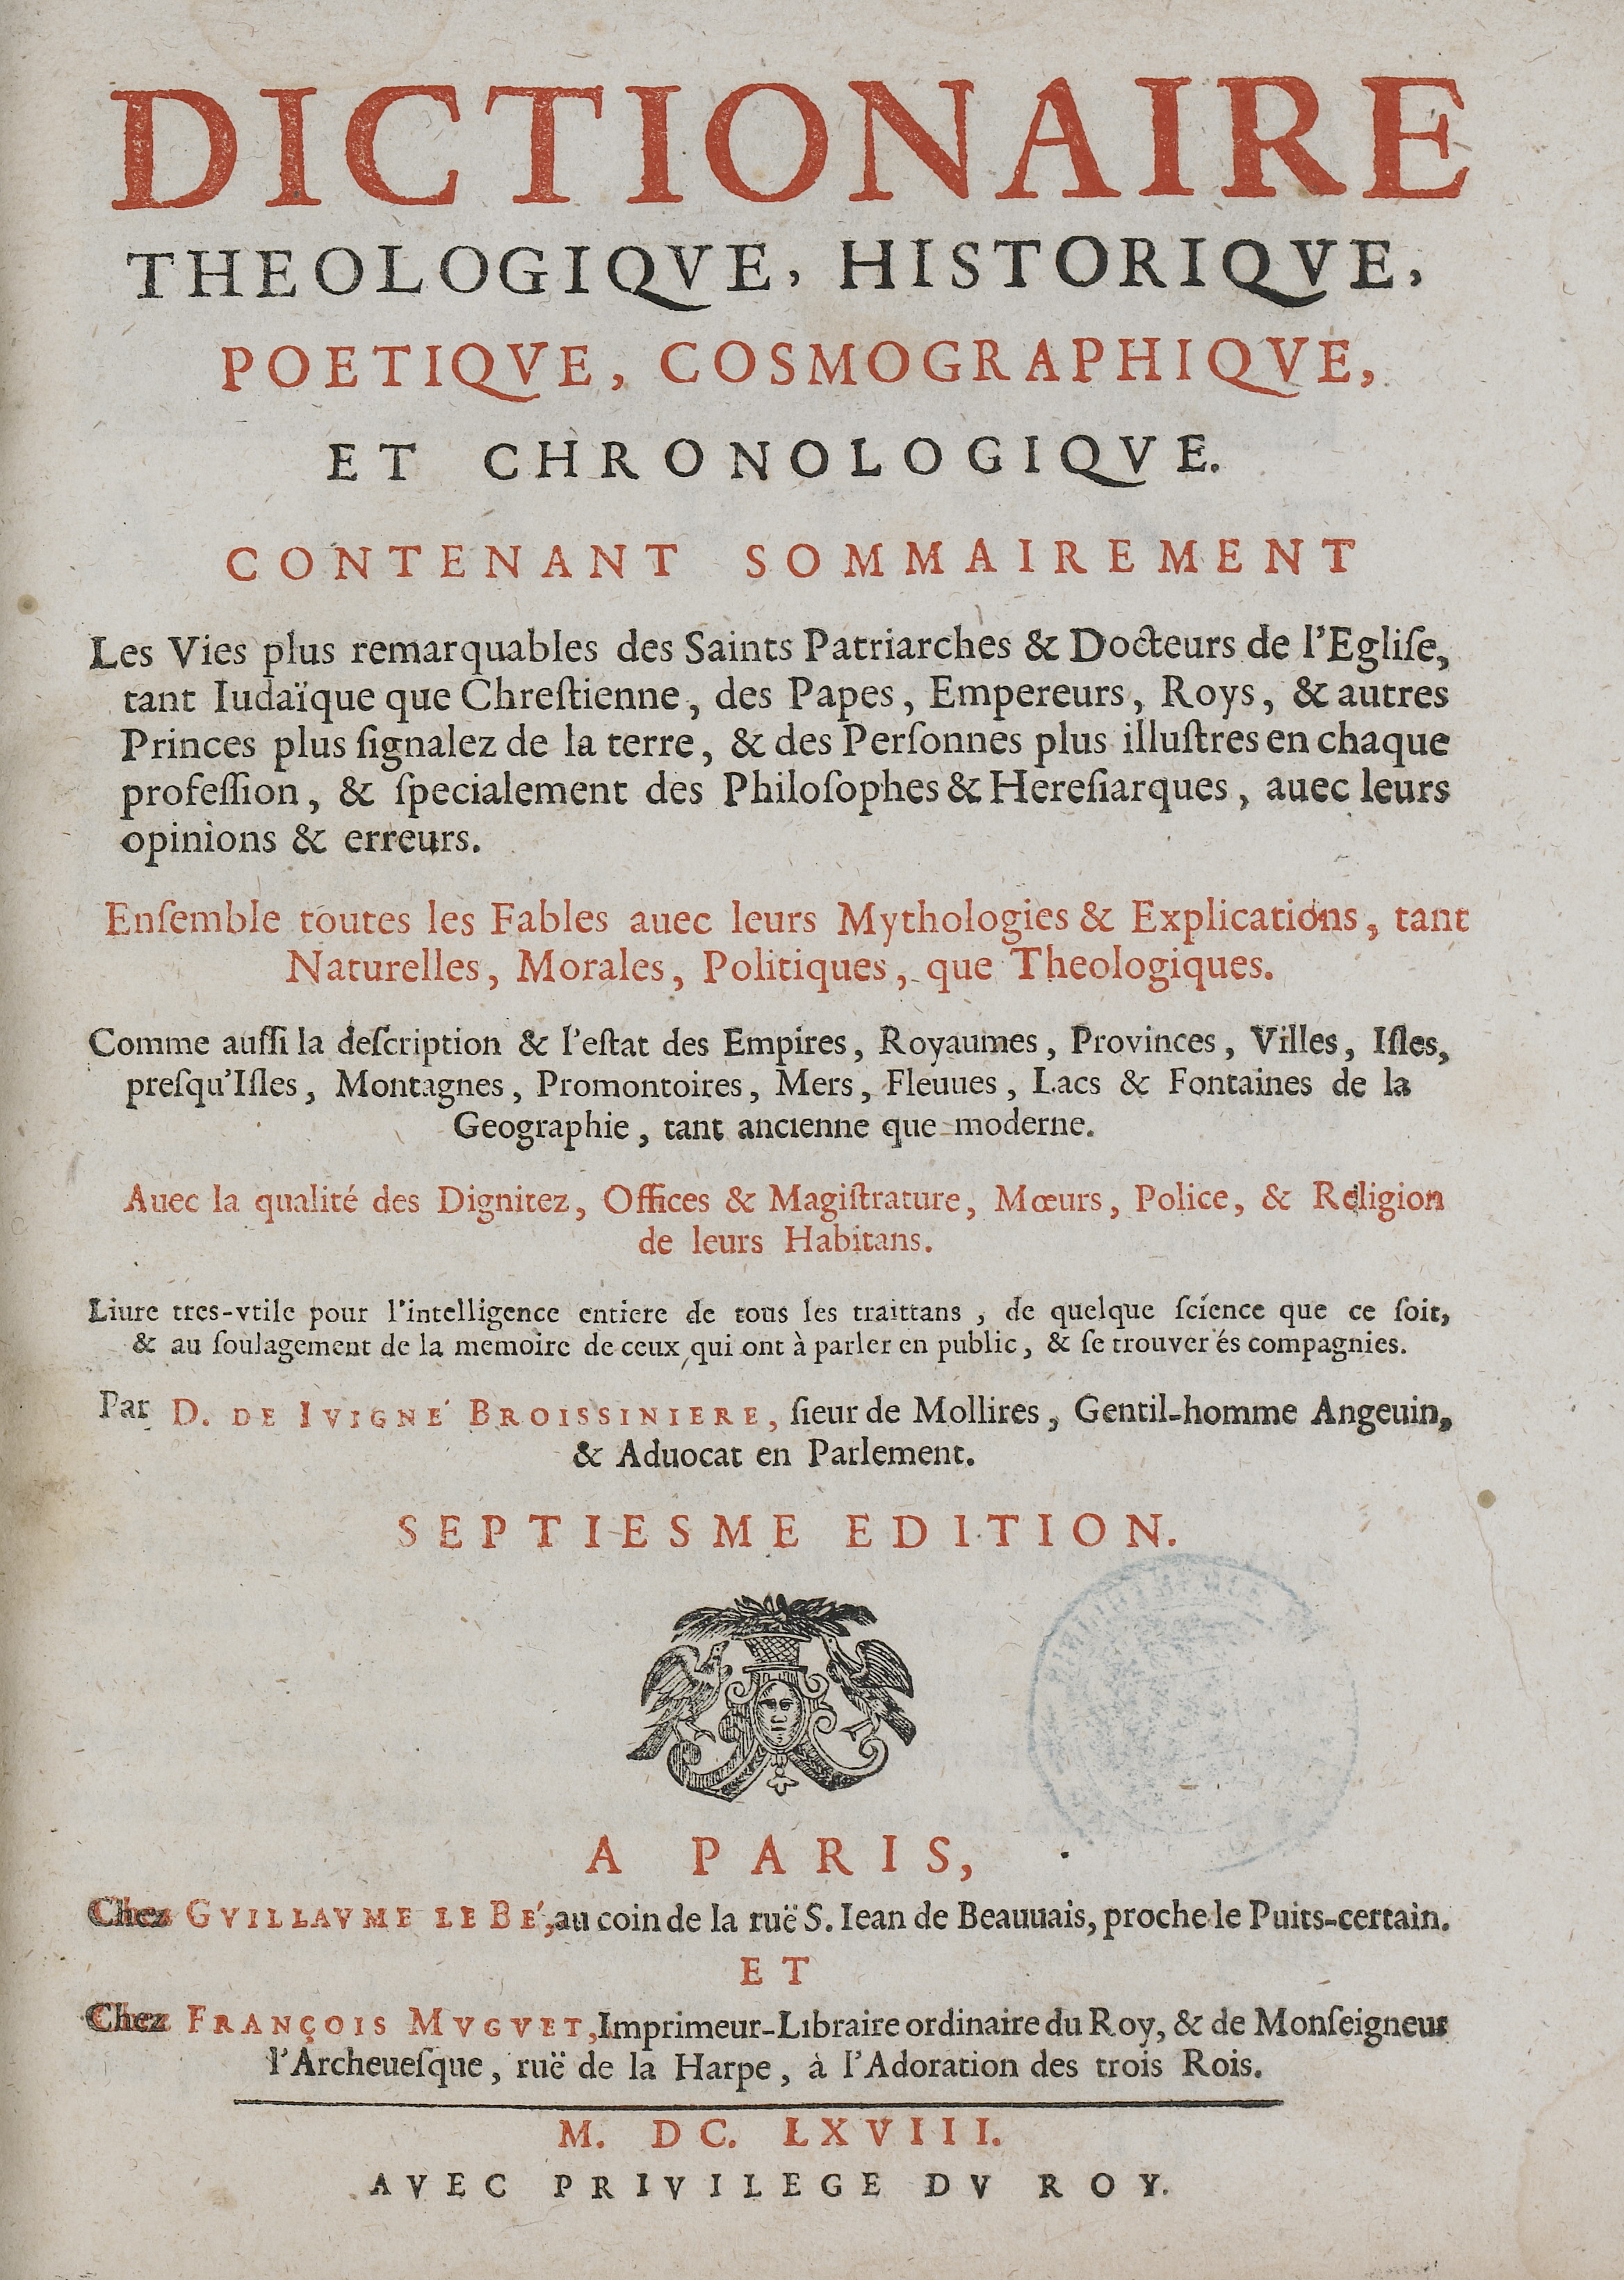 Dictionnaire de Juigné-Broissinière.jpg